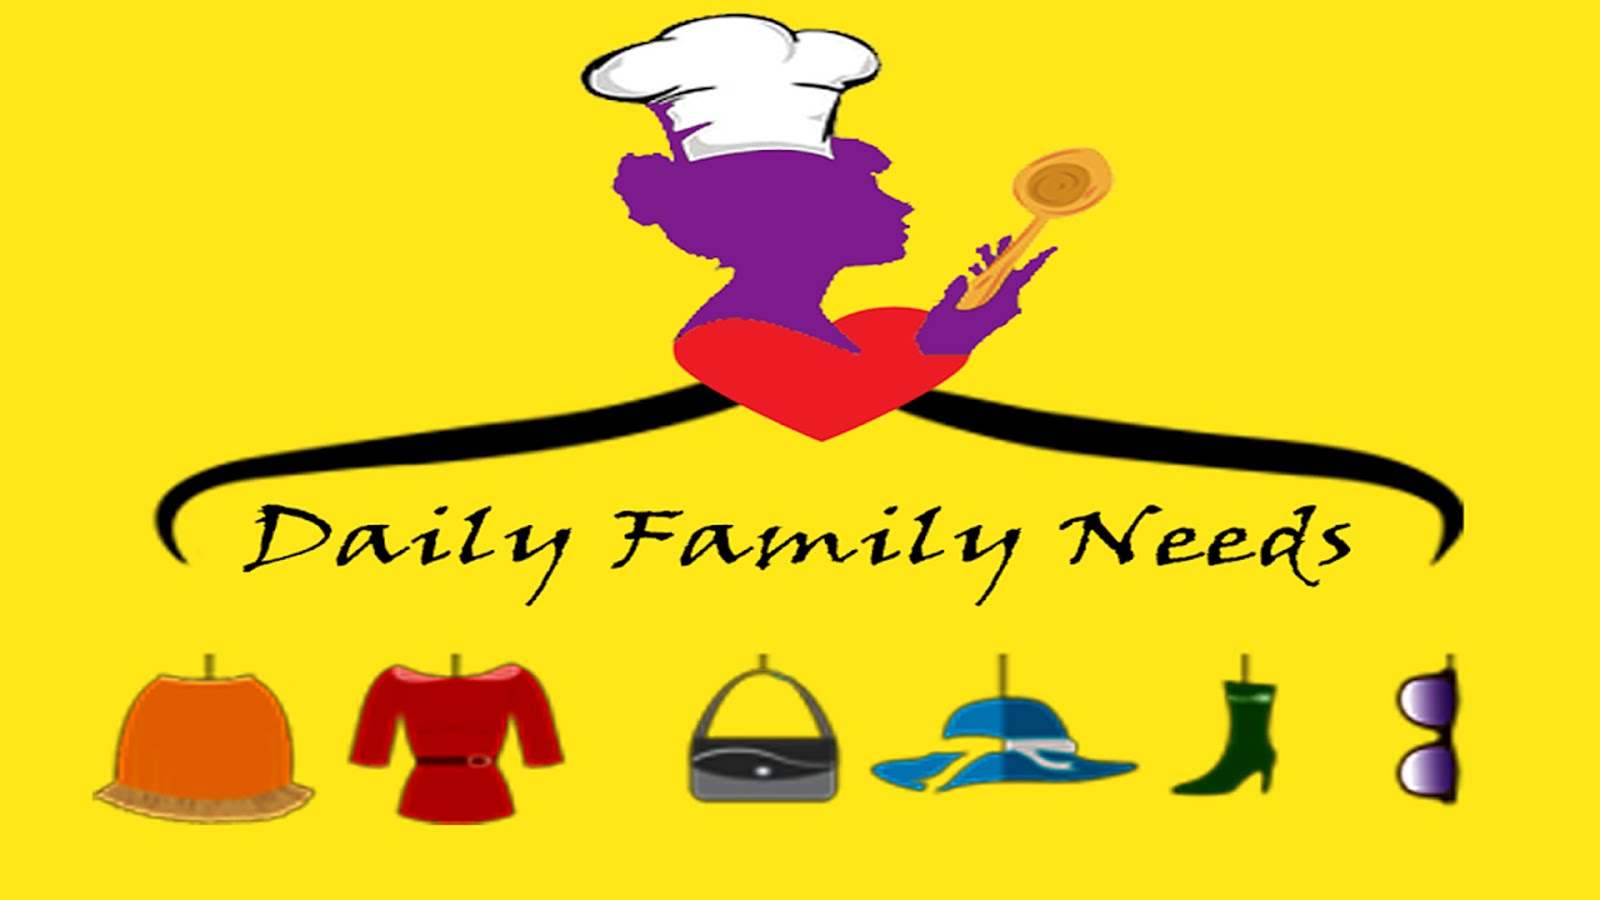 Daily family needs